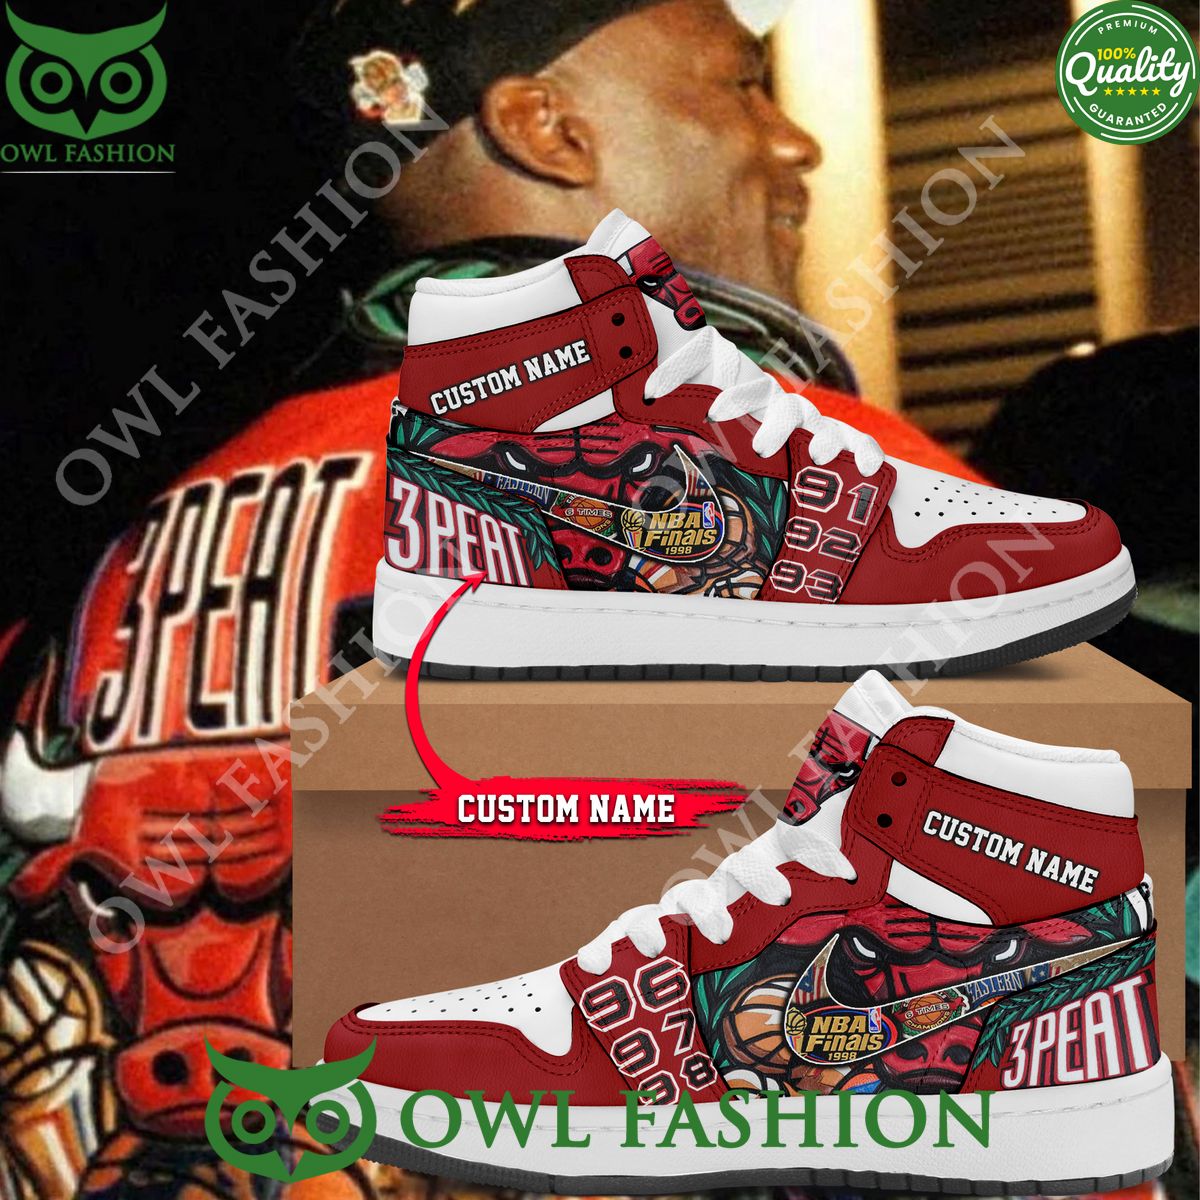 Custom name Michael Jordan 3 Peat lil wayne Chicago Bulls Sneaker Air Jordan